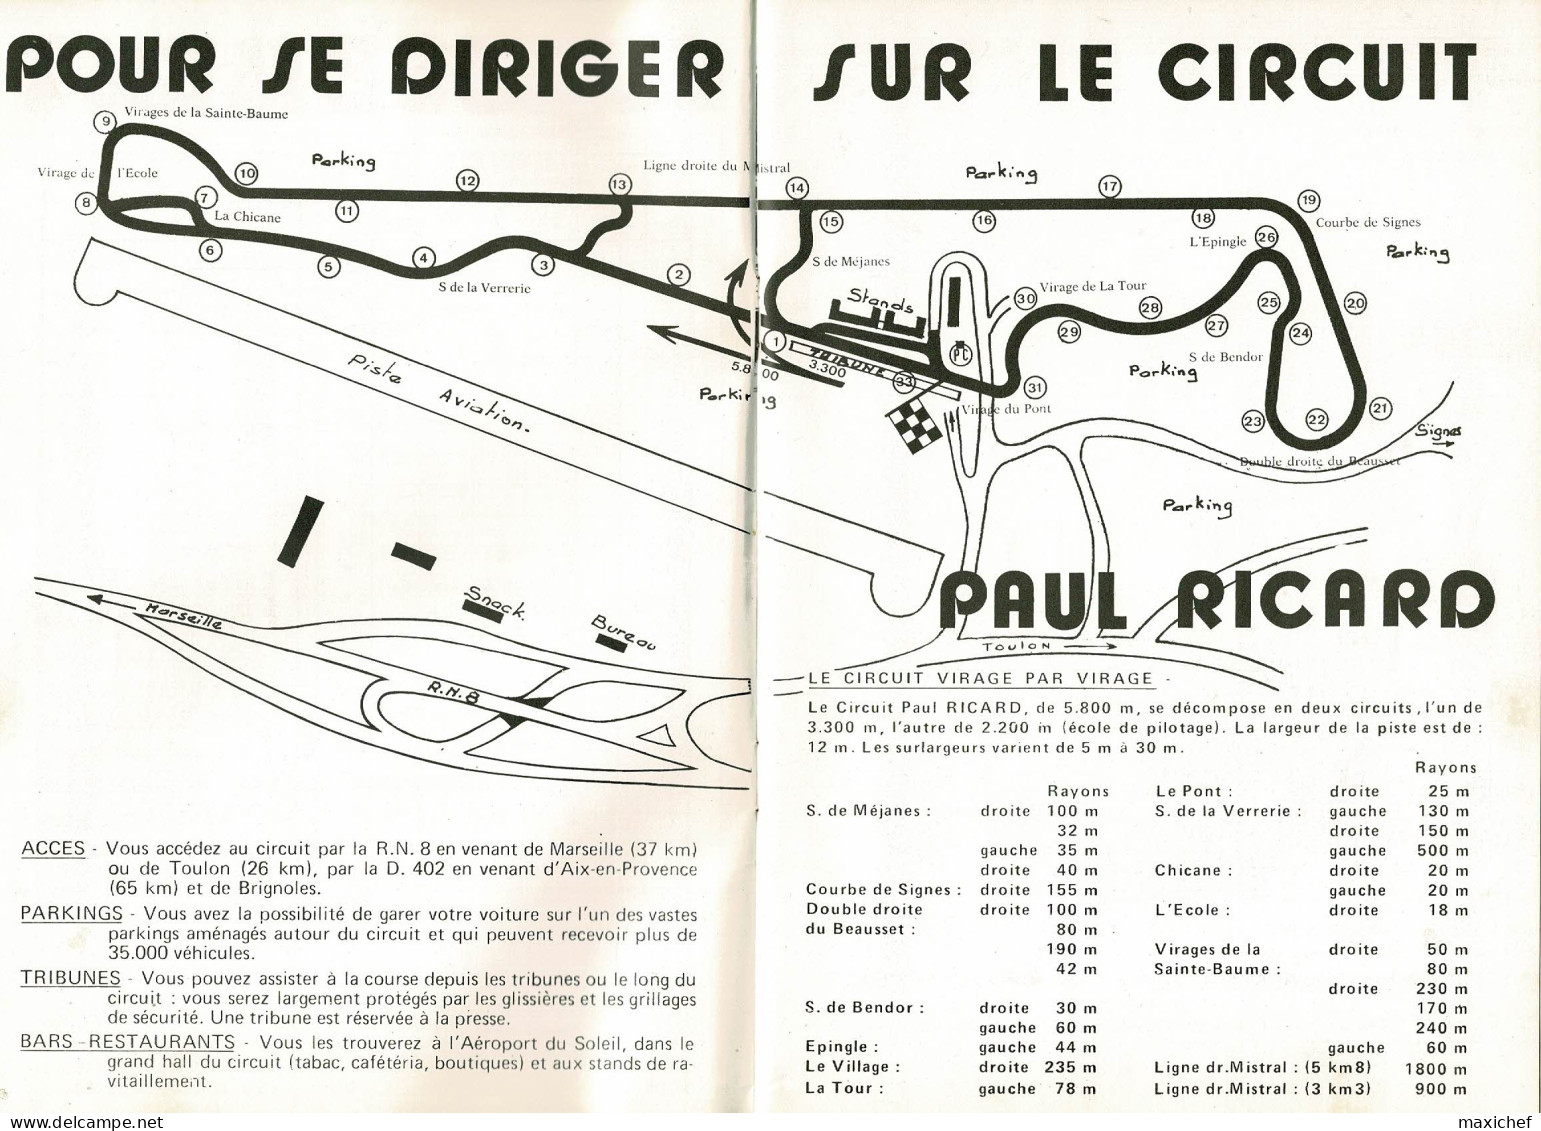 Circuit Paul Ricard 2.3.4 Juillet 1971 - Championnat Du Monde Formule 1, 4ème Grand Prix De France - 15 X 22cm - Autosport - F1